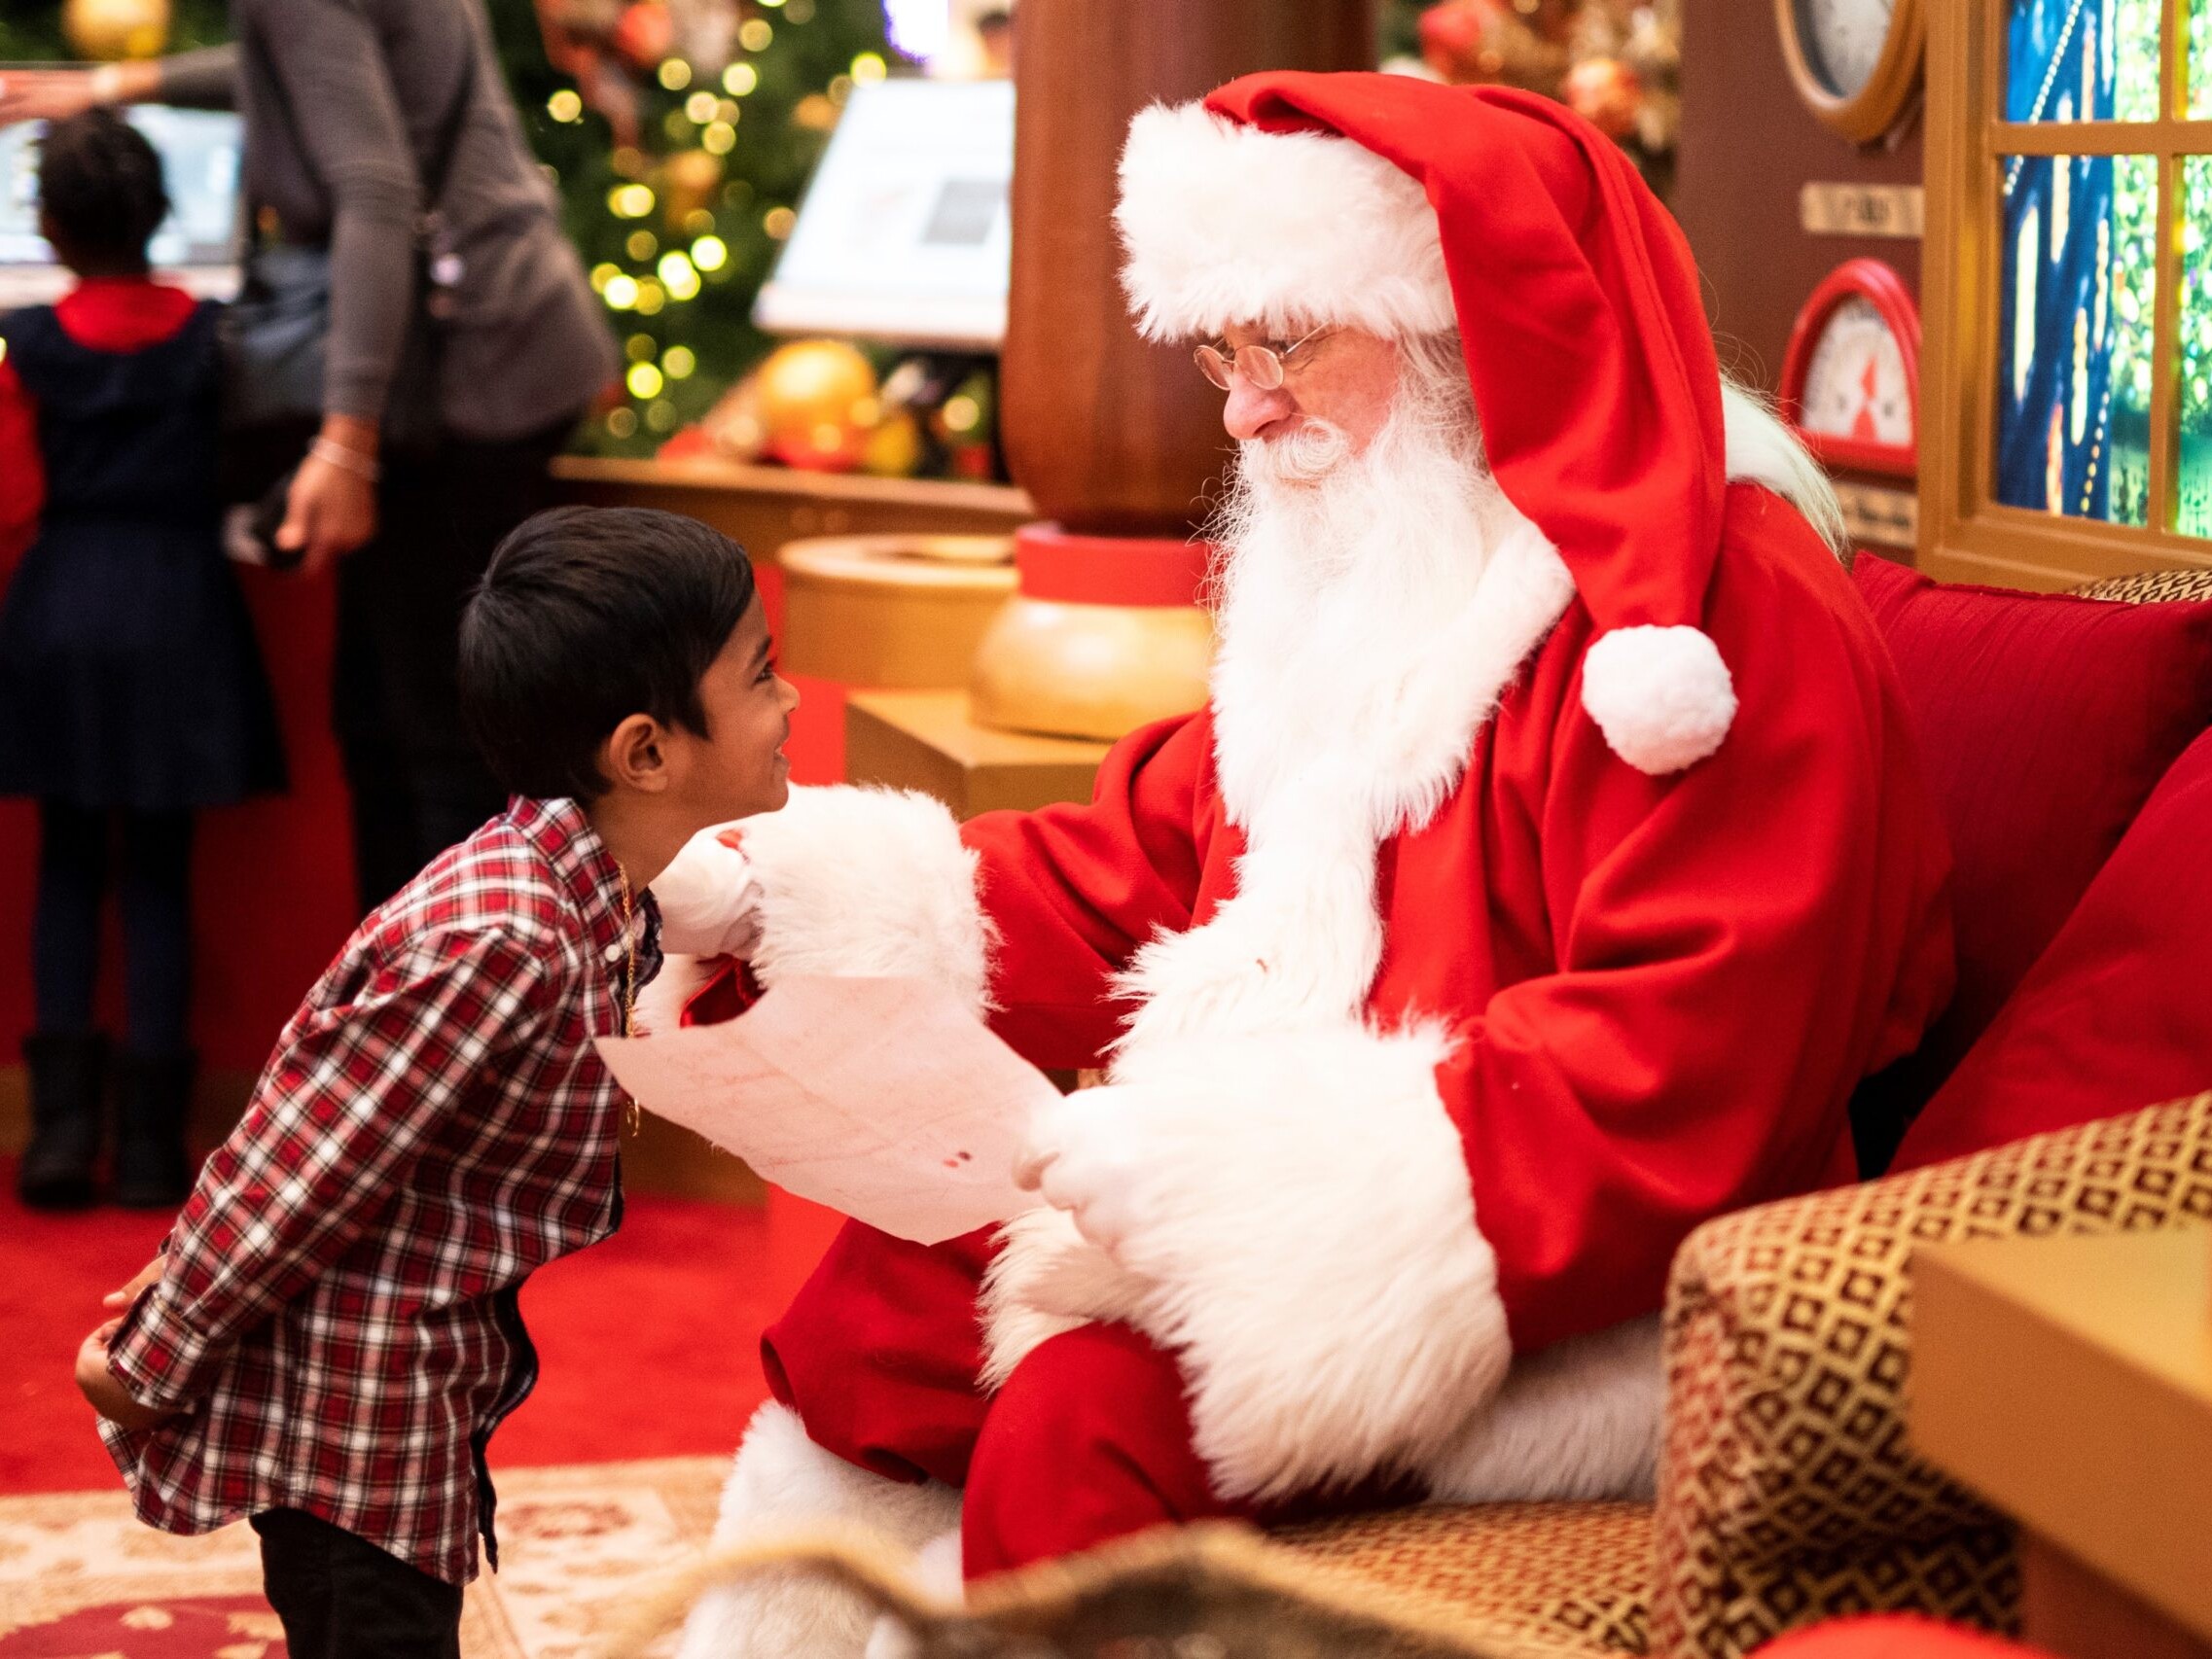 A small kid talking to Santa at a holiday event.